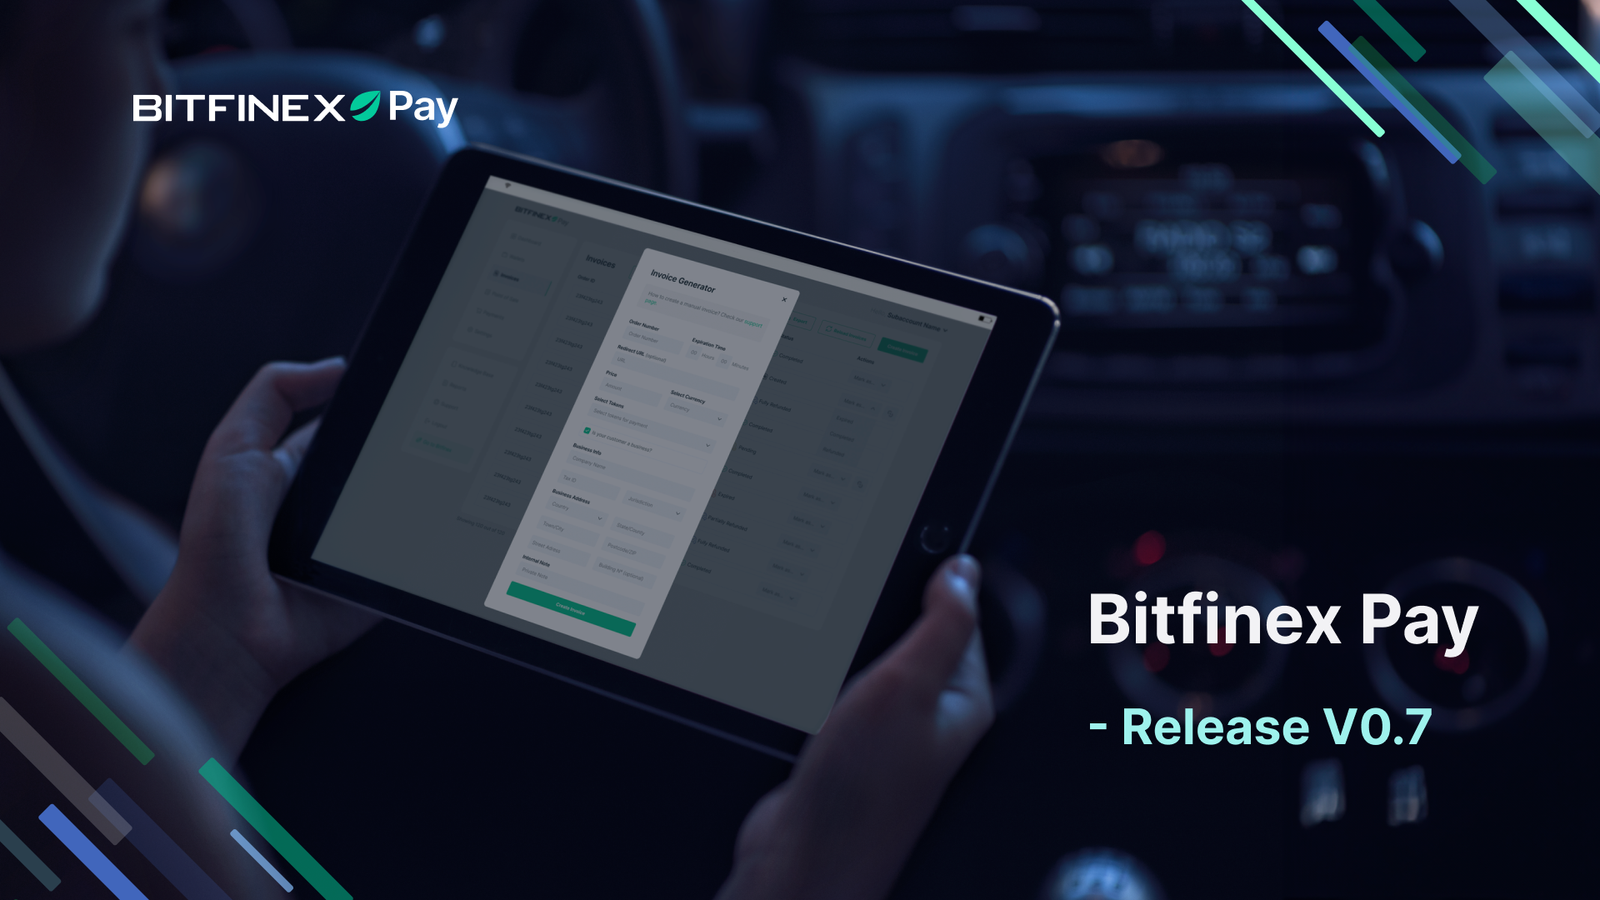 Bitfinex Pay - Release V0.7